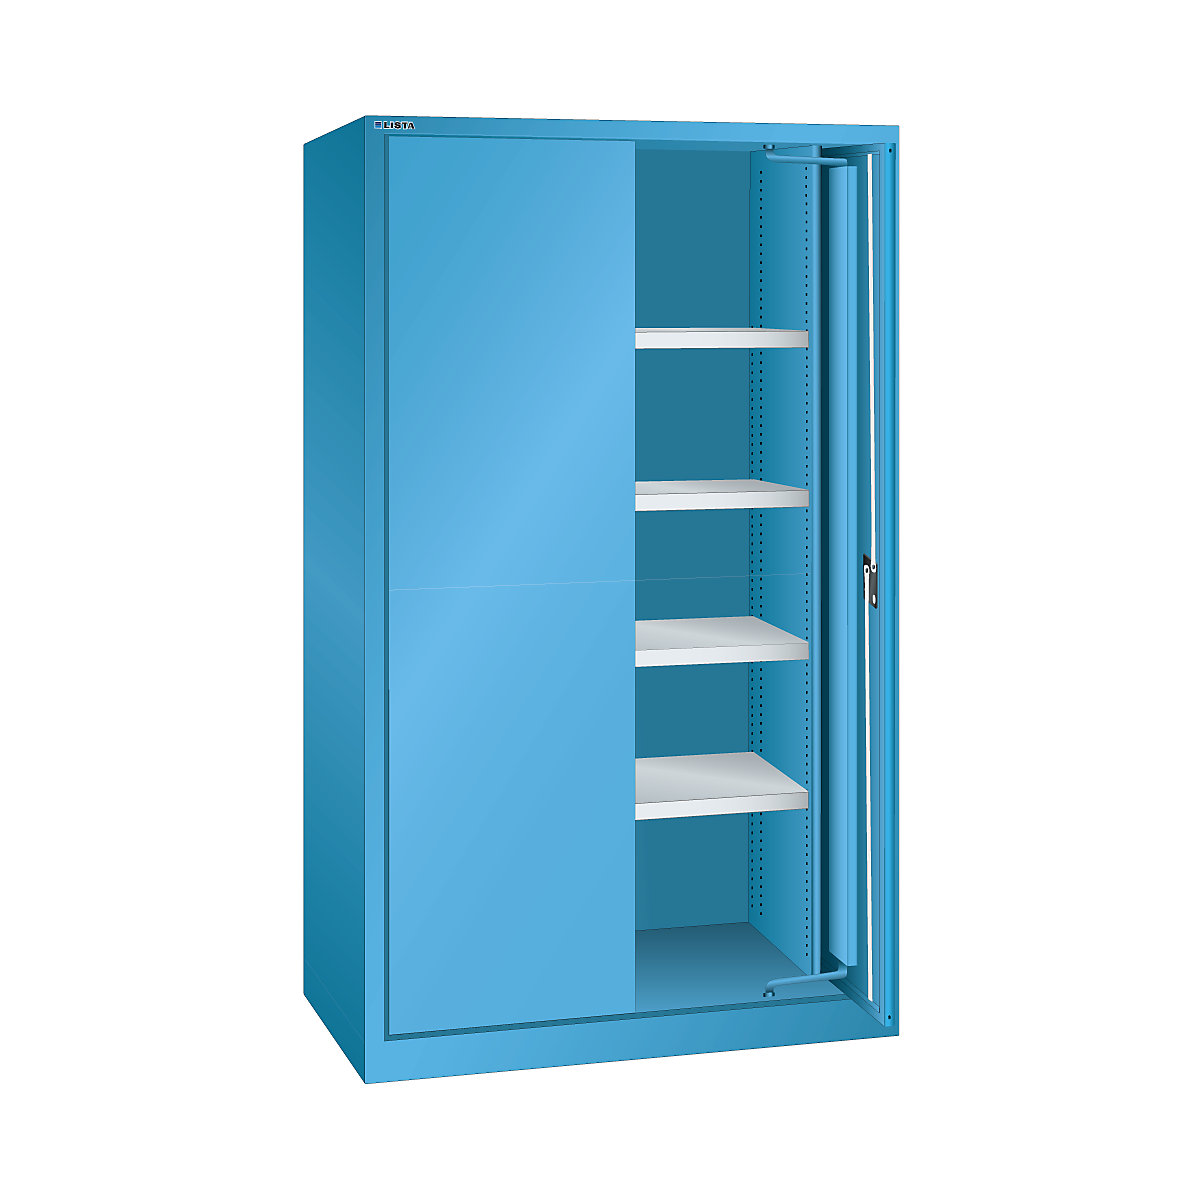 Zwaarlastkast met inschuifdeuren – LISTA, 4 legborden, met plaatstalen deuren, lichtblauw-8